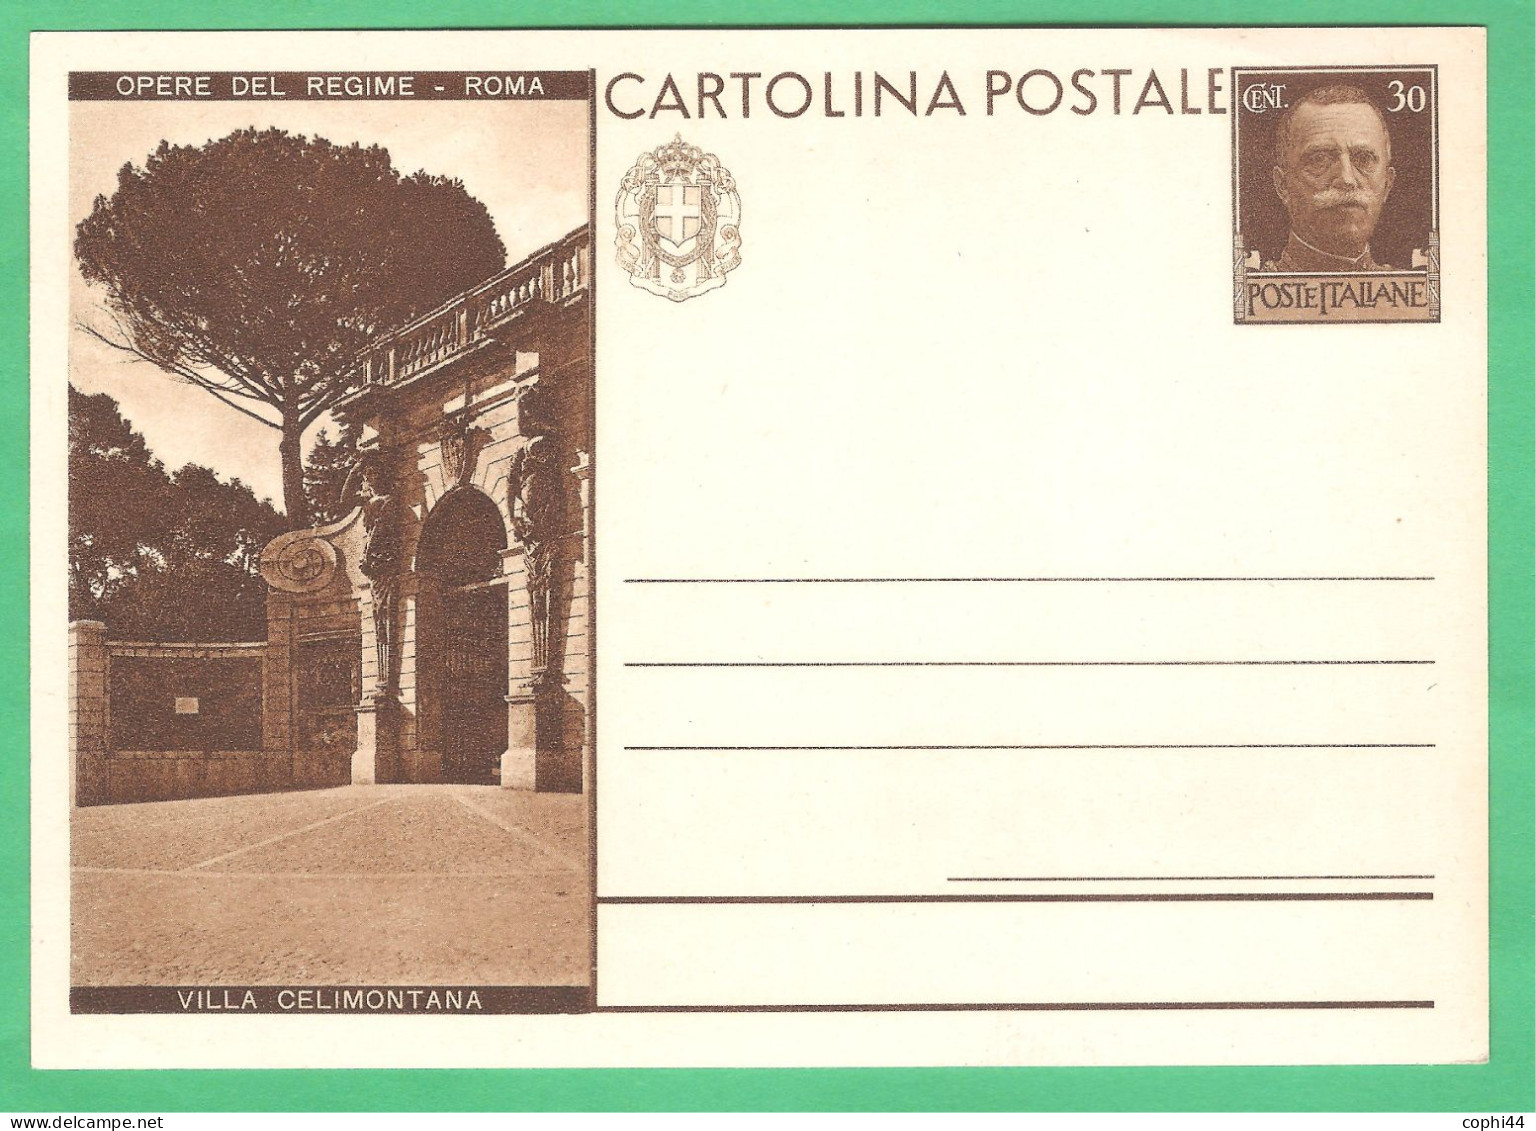 REGNO D'ITALIA 1931 CARTOLINA POSTALE VEIII OPERE DEL REGIME VILLA CELIMONTANA 30 C Bruno (FILAGRANO C70-24) NUOVA - Ganzsachen